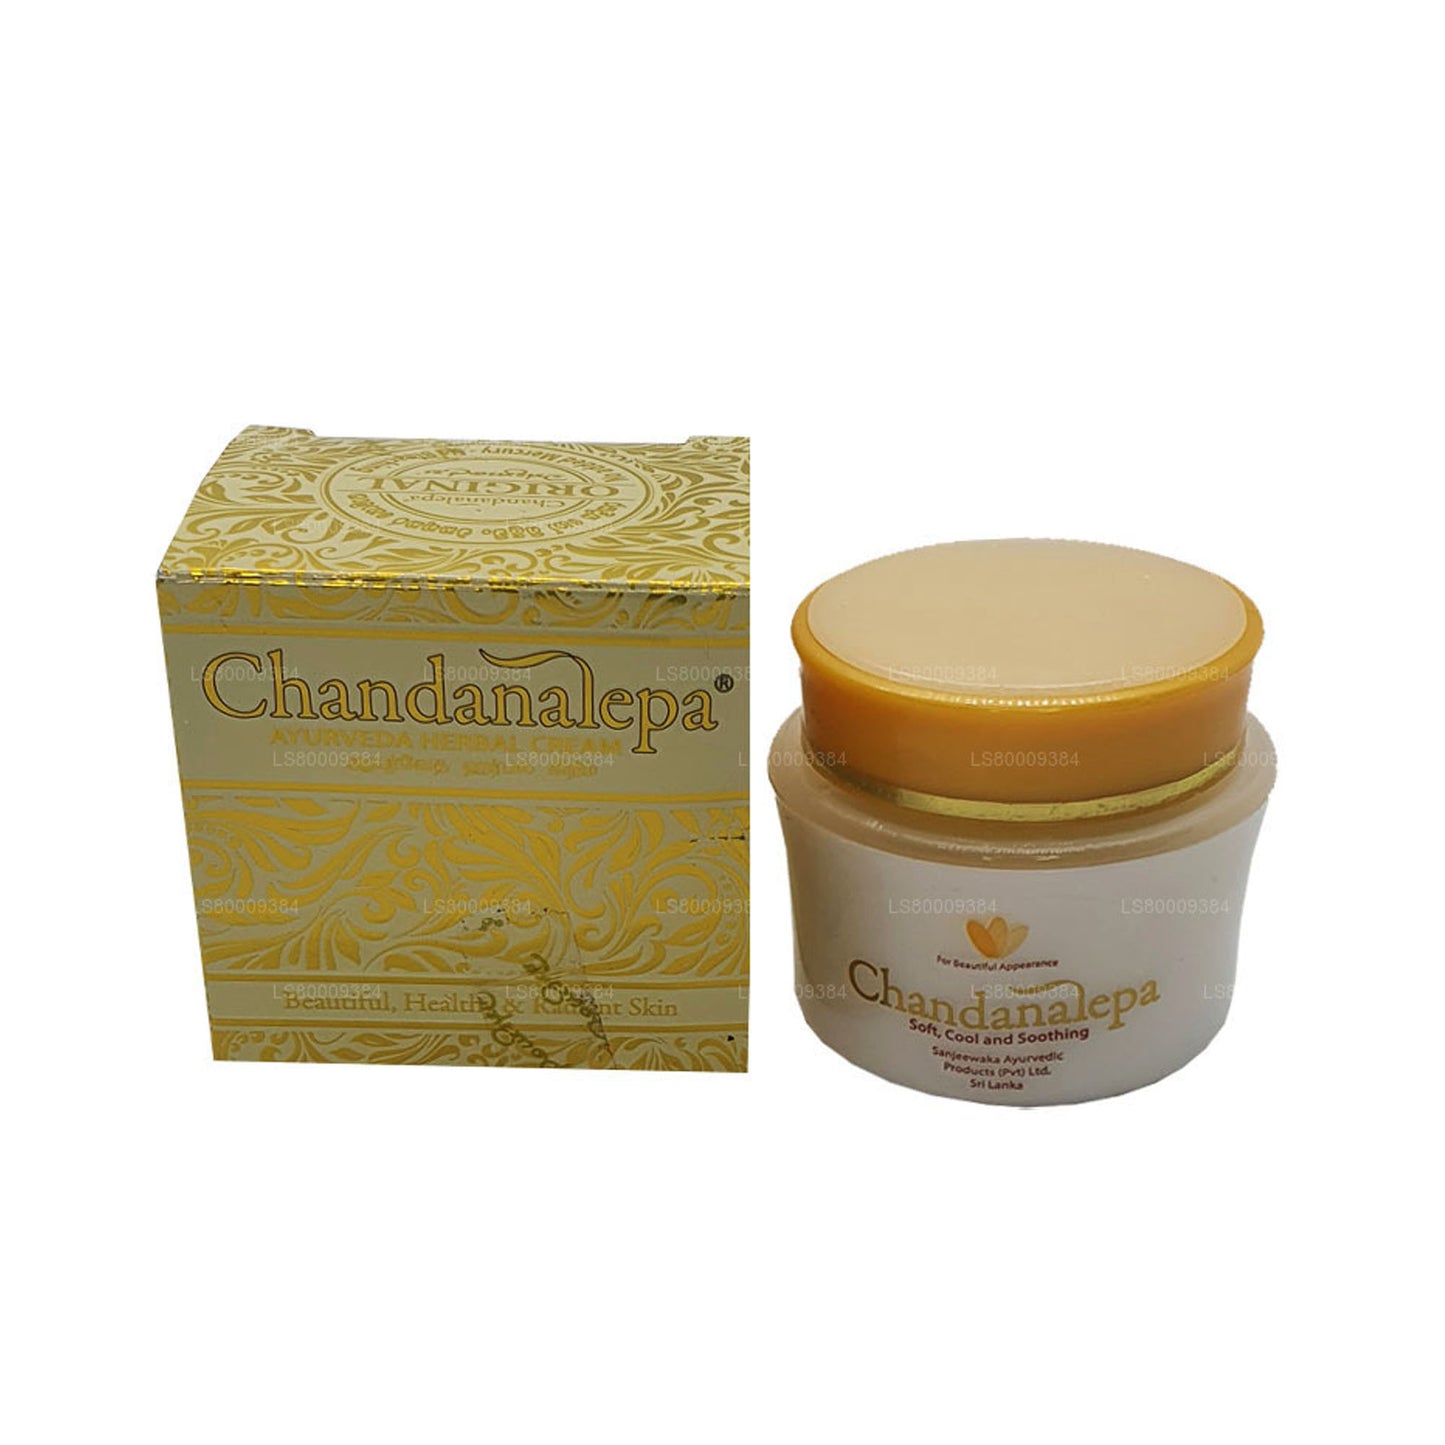 Chandanalepa kruidencrème